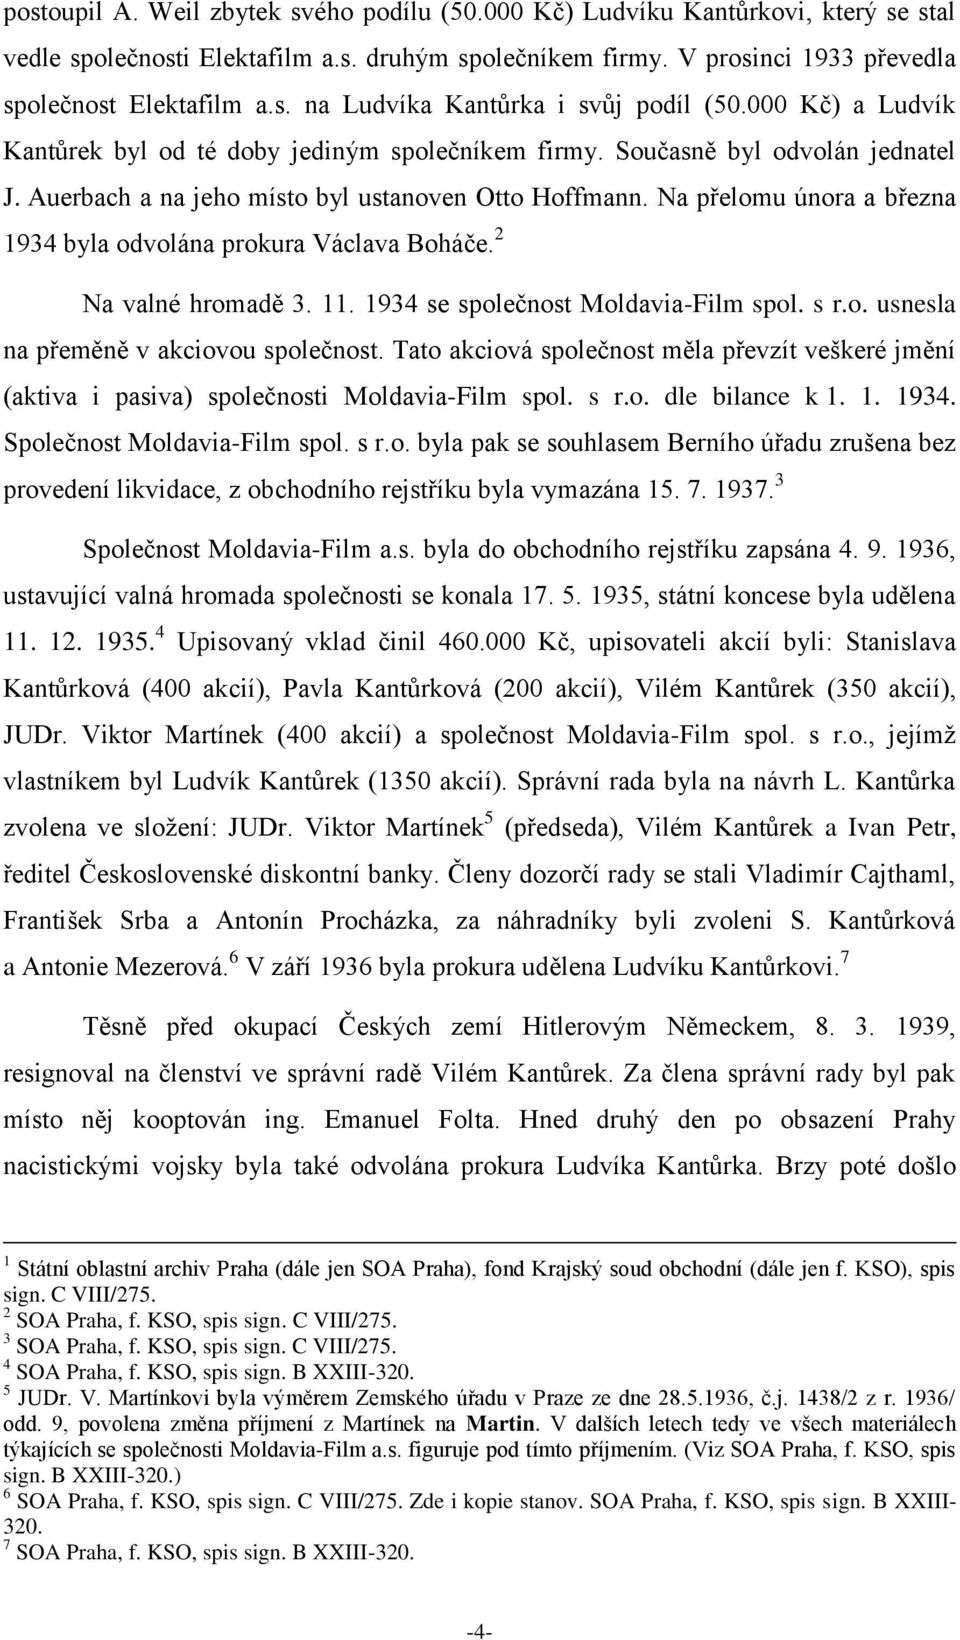 Na přelomu února a března 1934 byla odvolána prokura Václava Boháče. 2 Na valné hromadě 3. 11. 1934 se společnost Moldavia-Film spol. s r.o. usnesla na přeměně v akciovou společnost.